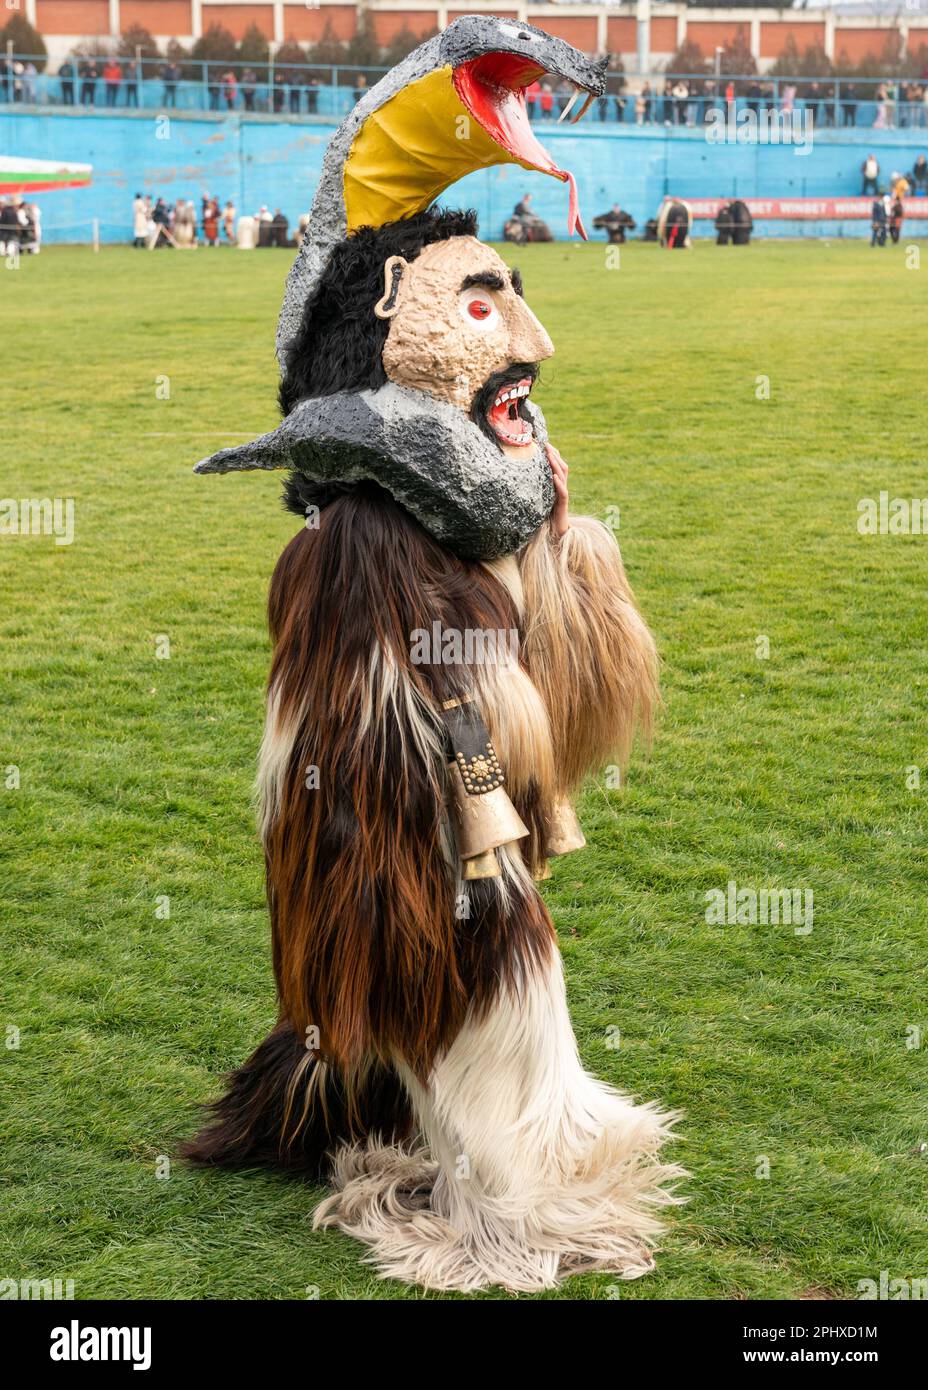 Mummer de Bulgarie centrale portant un masque étrange et un costume de chèvre lors du festival annuel d'hiver Simitlia à Simitli, Bulgarie, Balkans, UE Banque D'Images